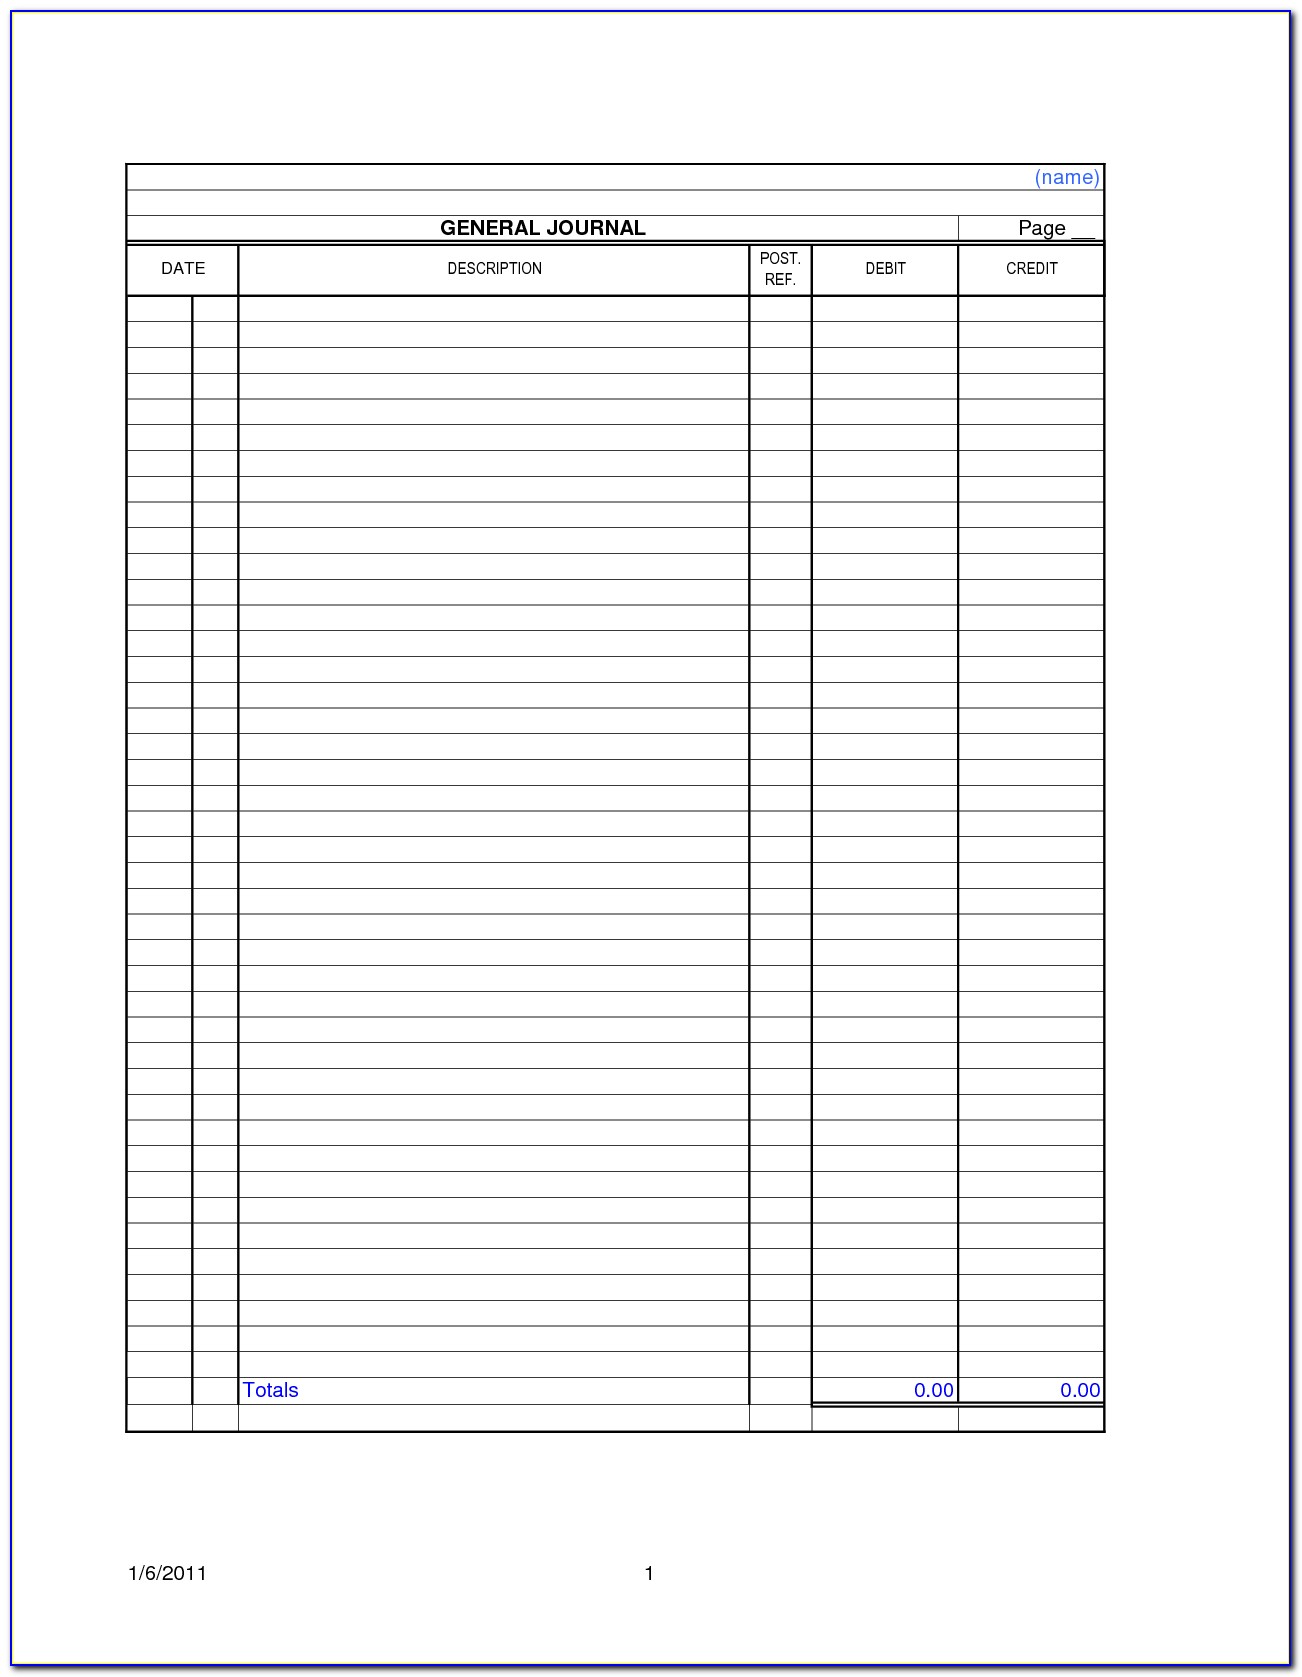 Blank Balance Sheet Format